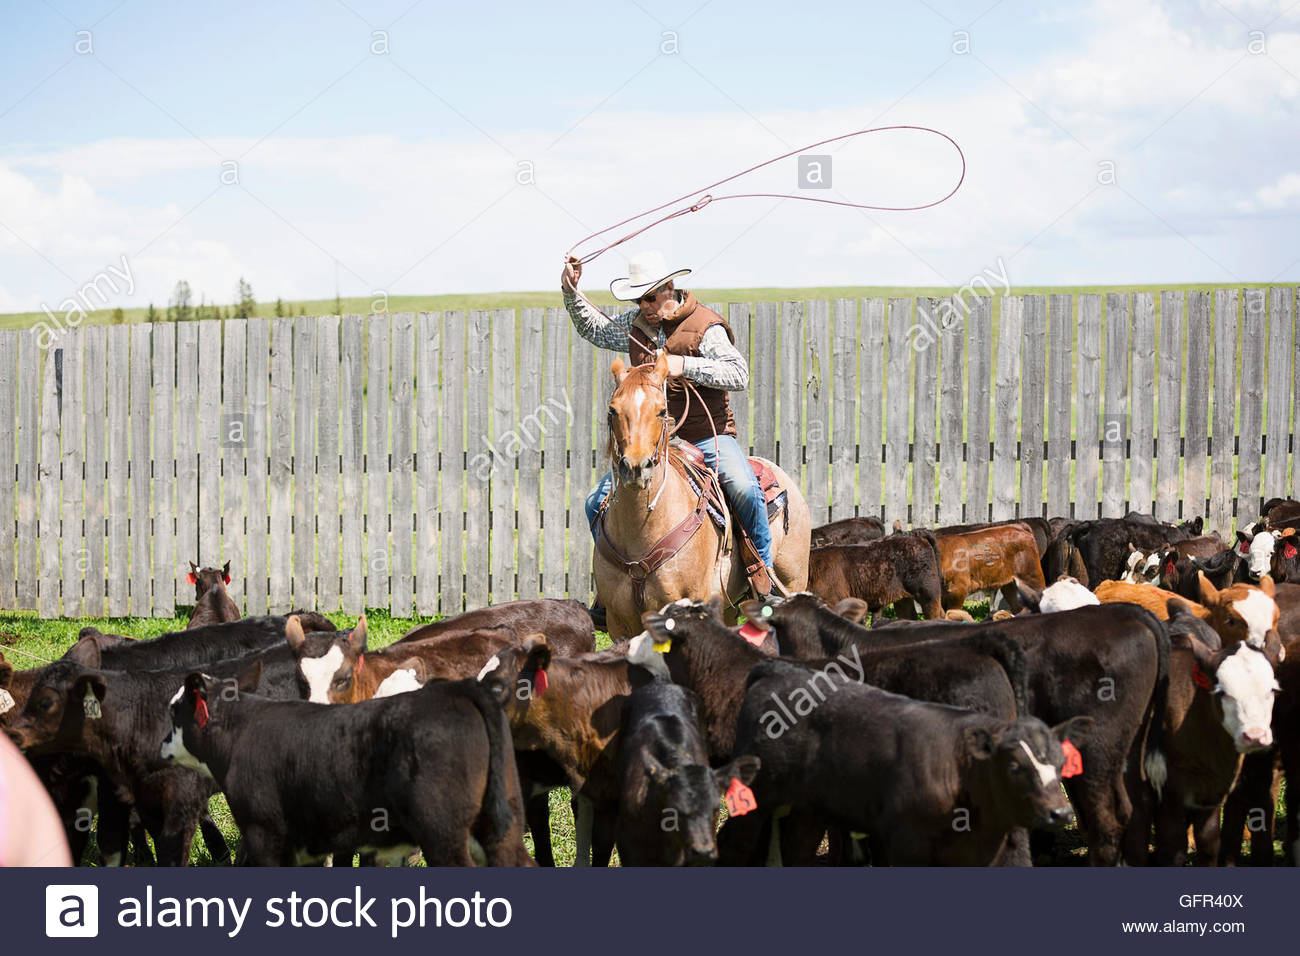 Ganadero a caballo lassoing vacas Foto de stock